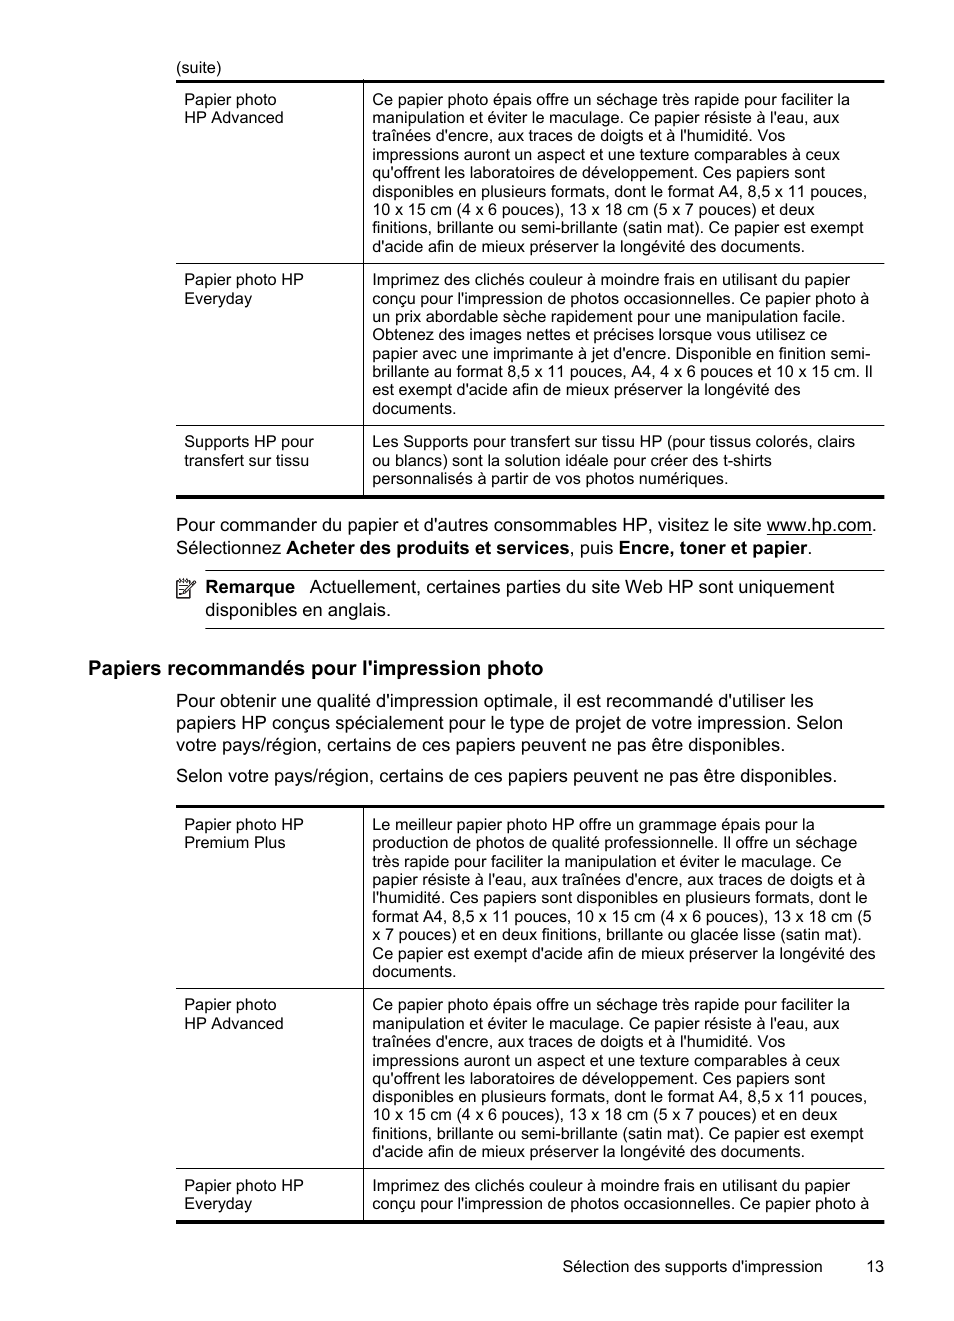 Papiers recommandés pour l'impression photo | HP Officejet 6100 Manuel d'utilisation | Page 17 / 152